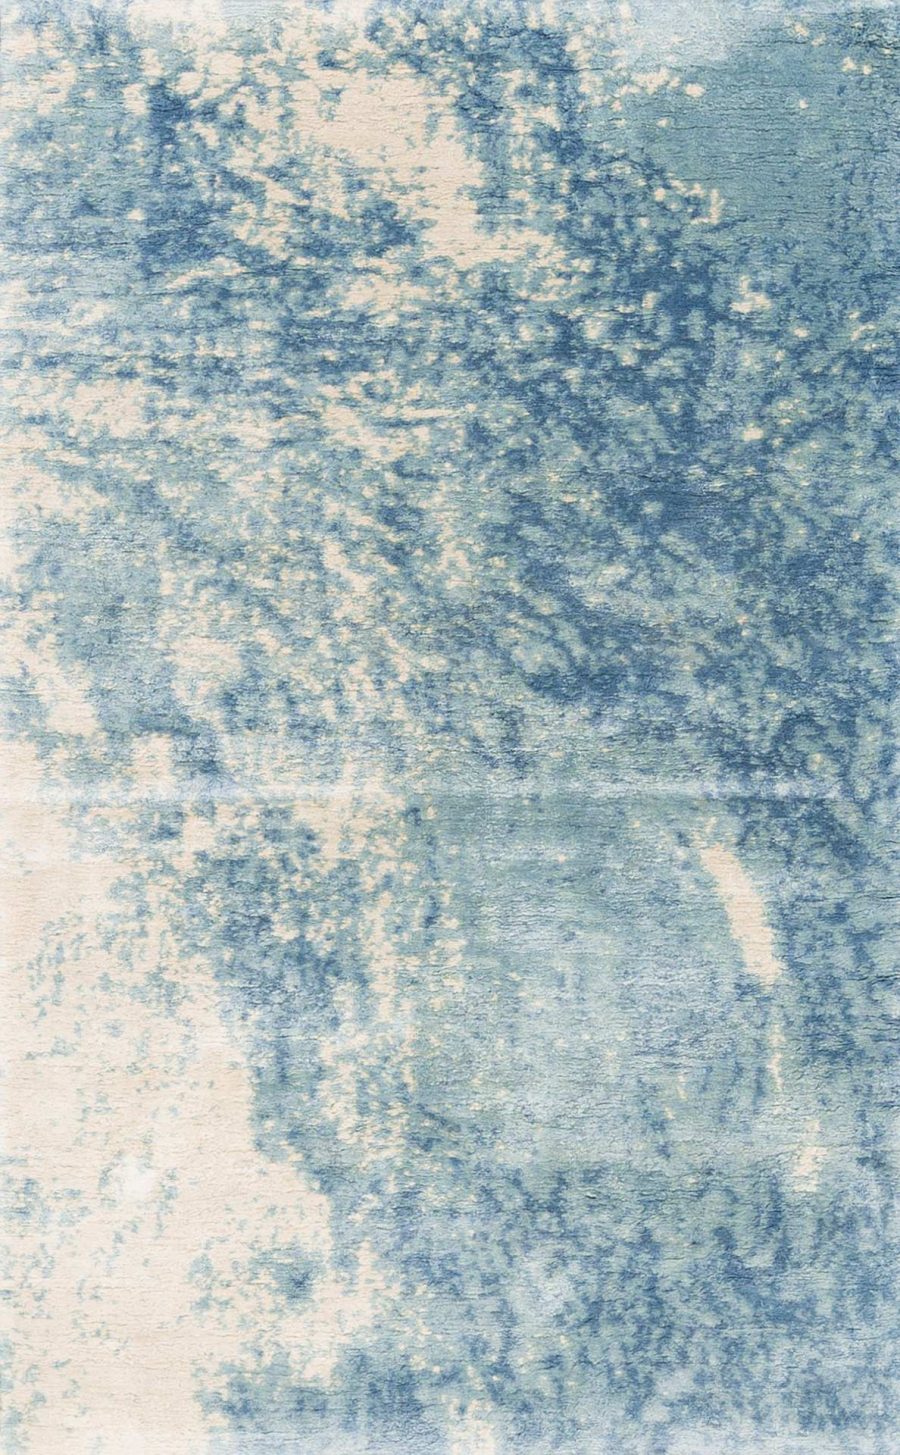 Nahaufnahme eines texturierten Teppichs mit blau-weißem Farbverlauf und Unschärfen, die ein abstraktes, wolkenartiges Muster erzeugen.